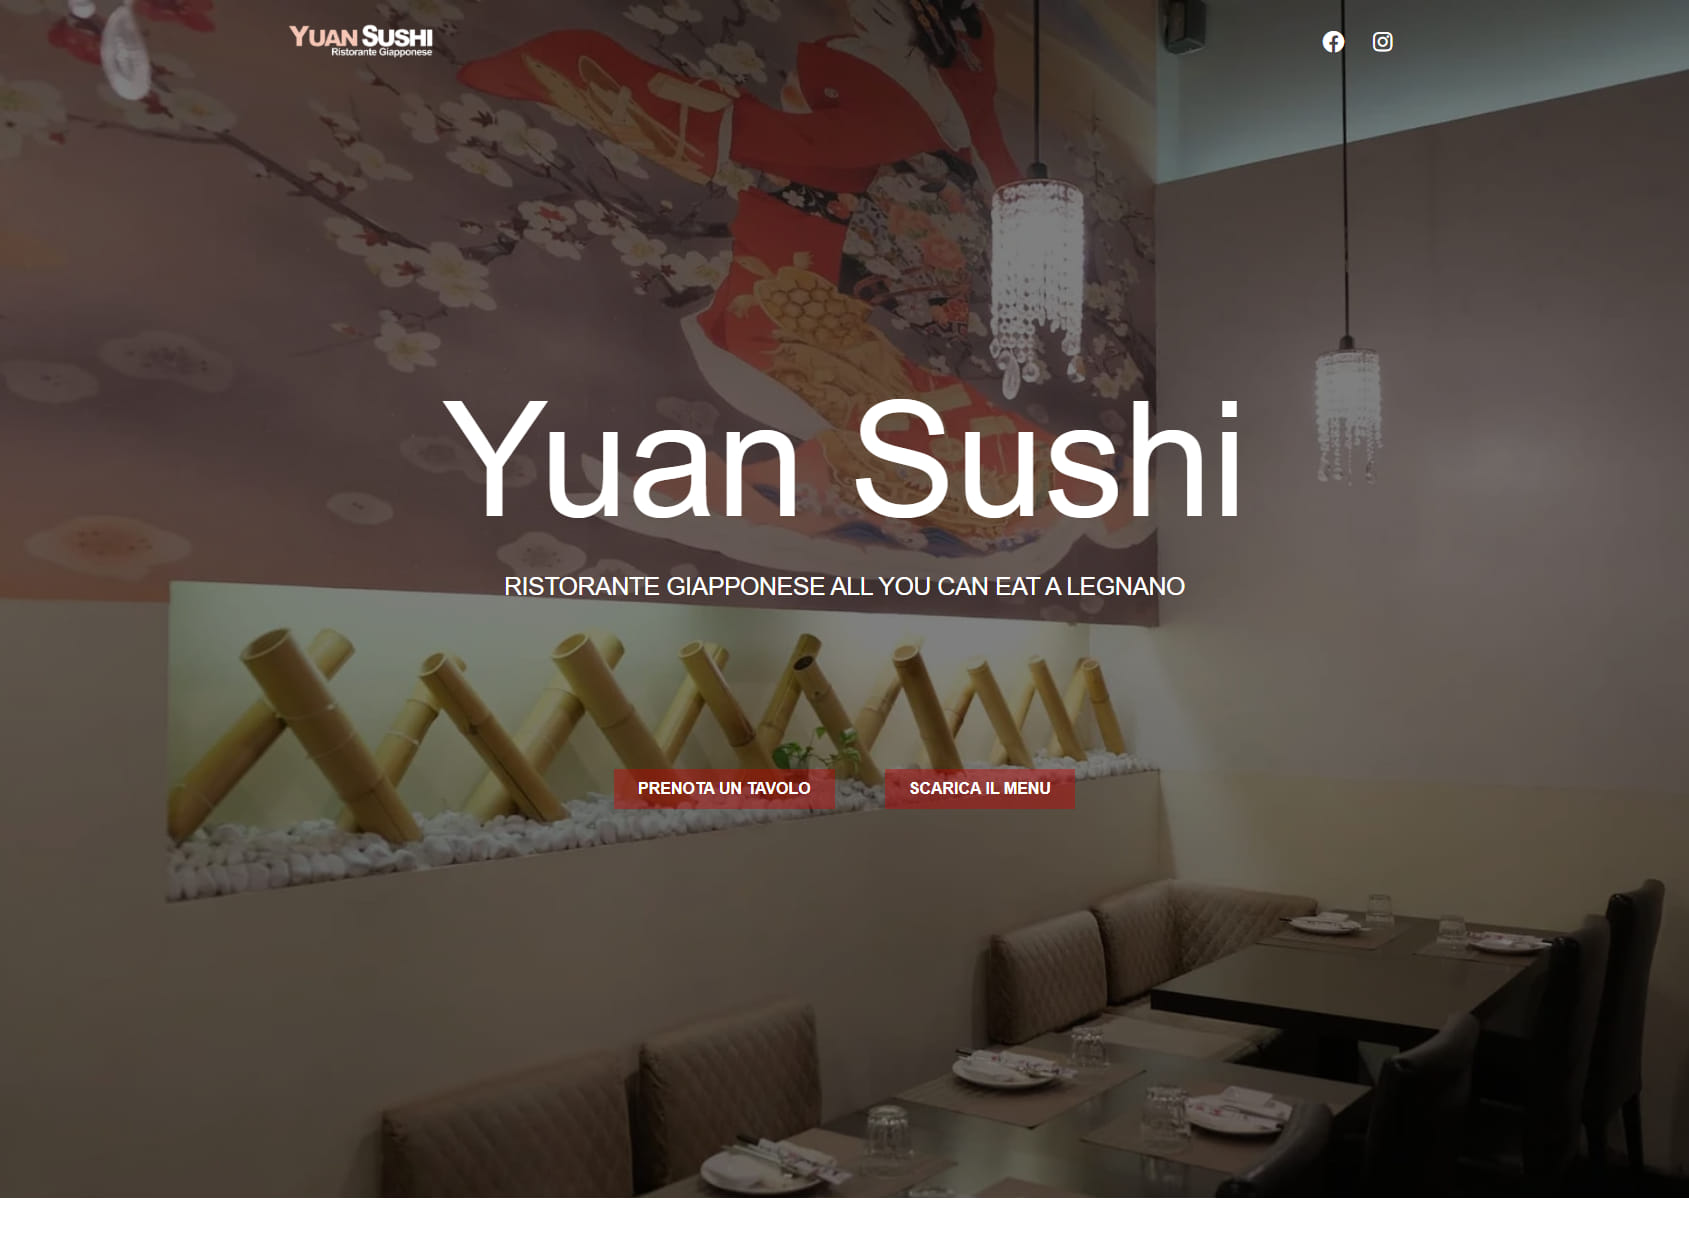 Yuan Sushi